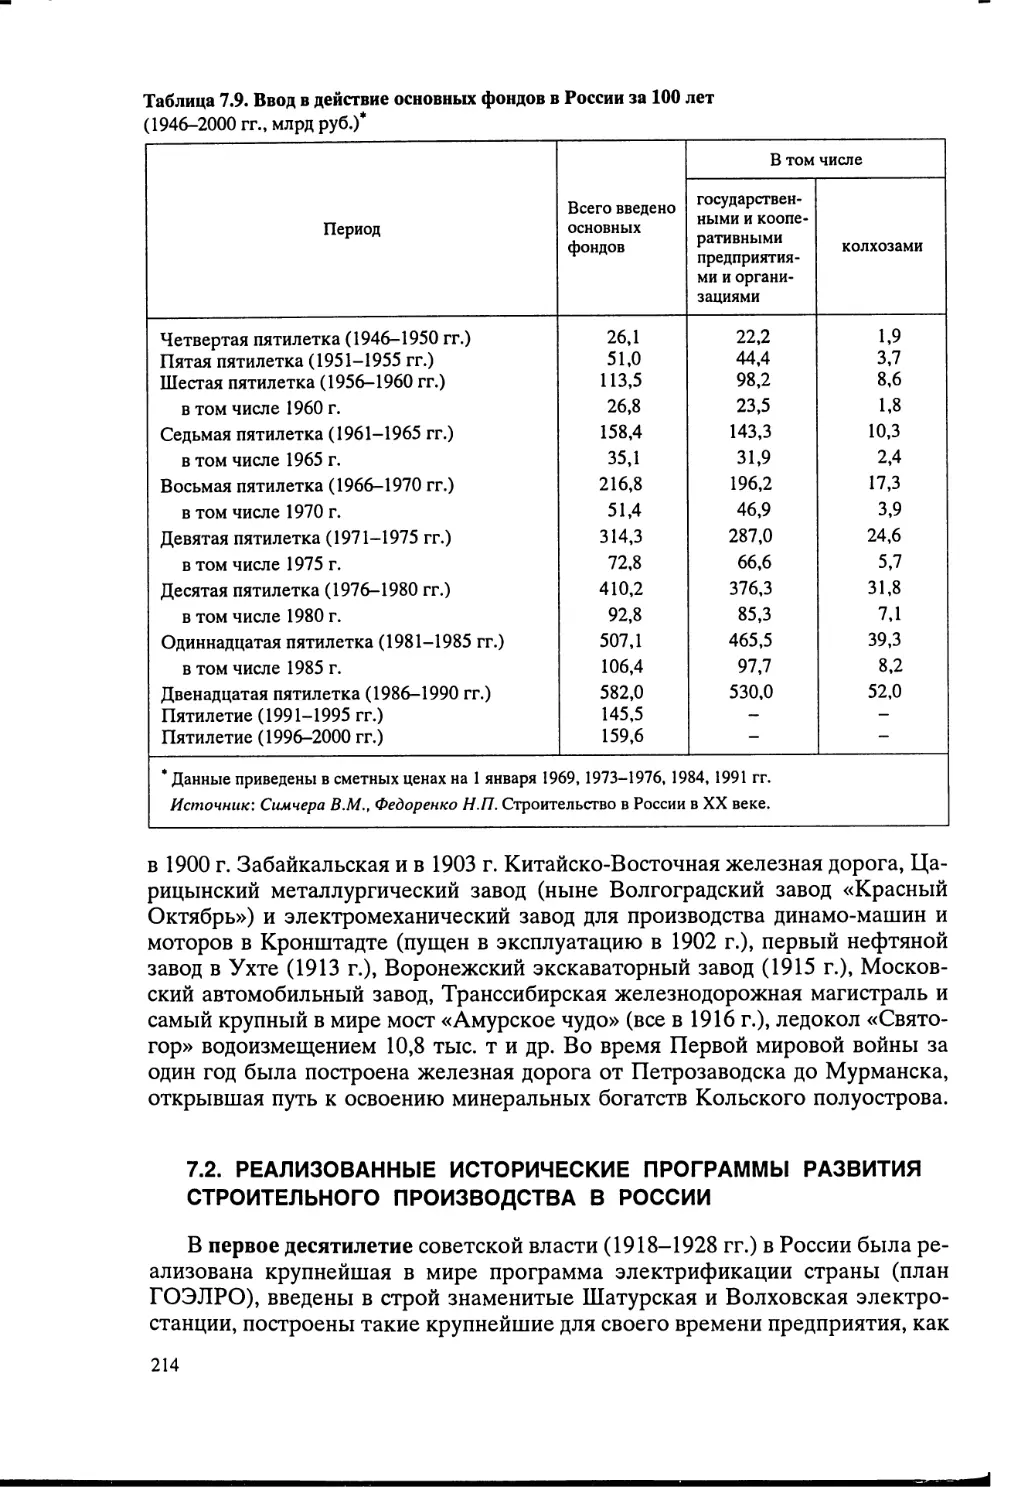 7.2. Реализованные исторические программы развития строительного производства в России [214]